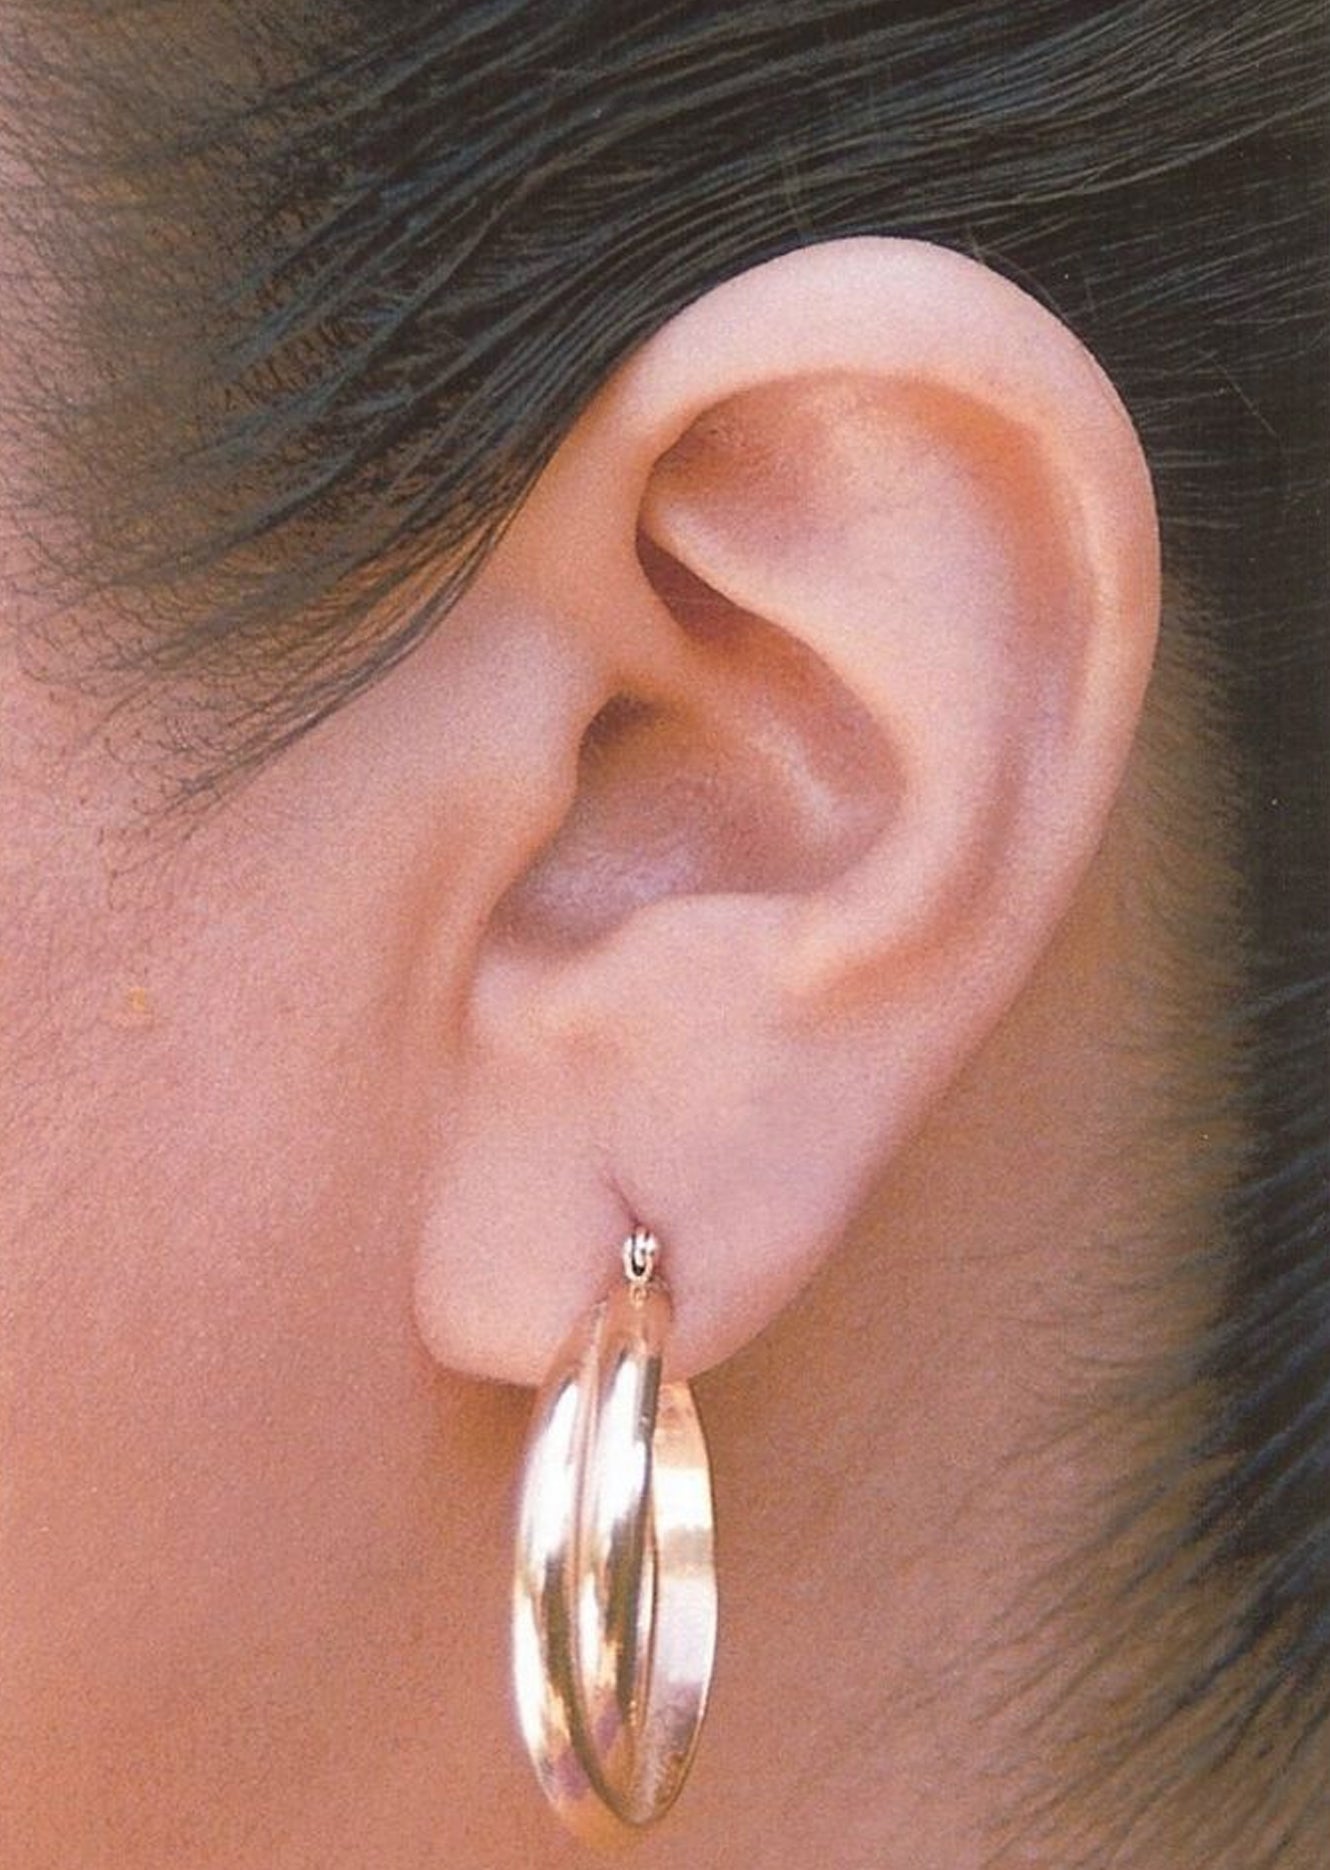 GSHLLO 300 Pcs Clear Ear Lobe Saver Lift Heavy Earring Ear